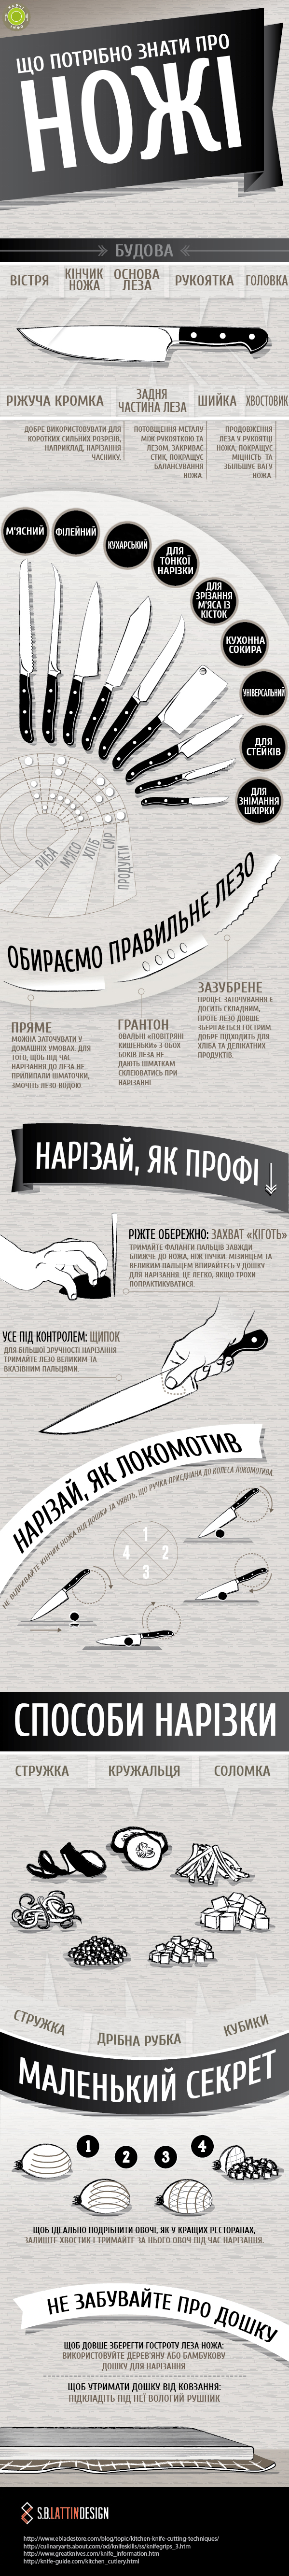 Інфографіка про ножі